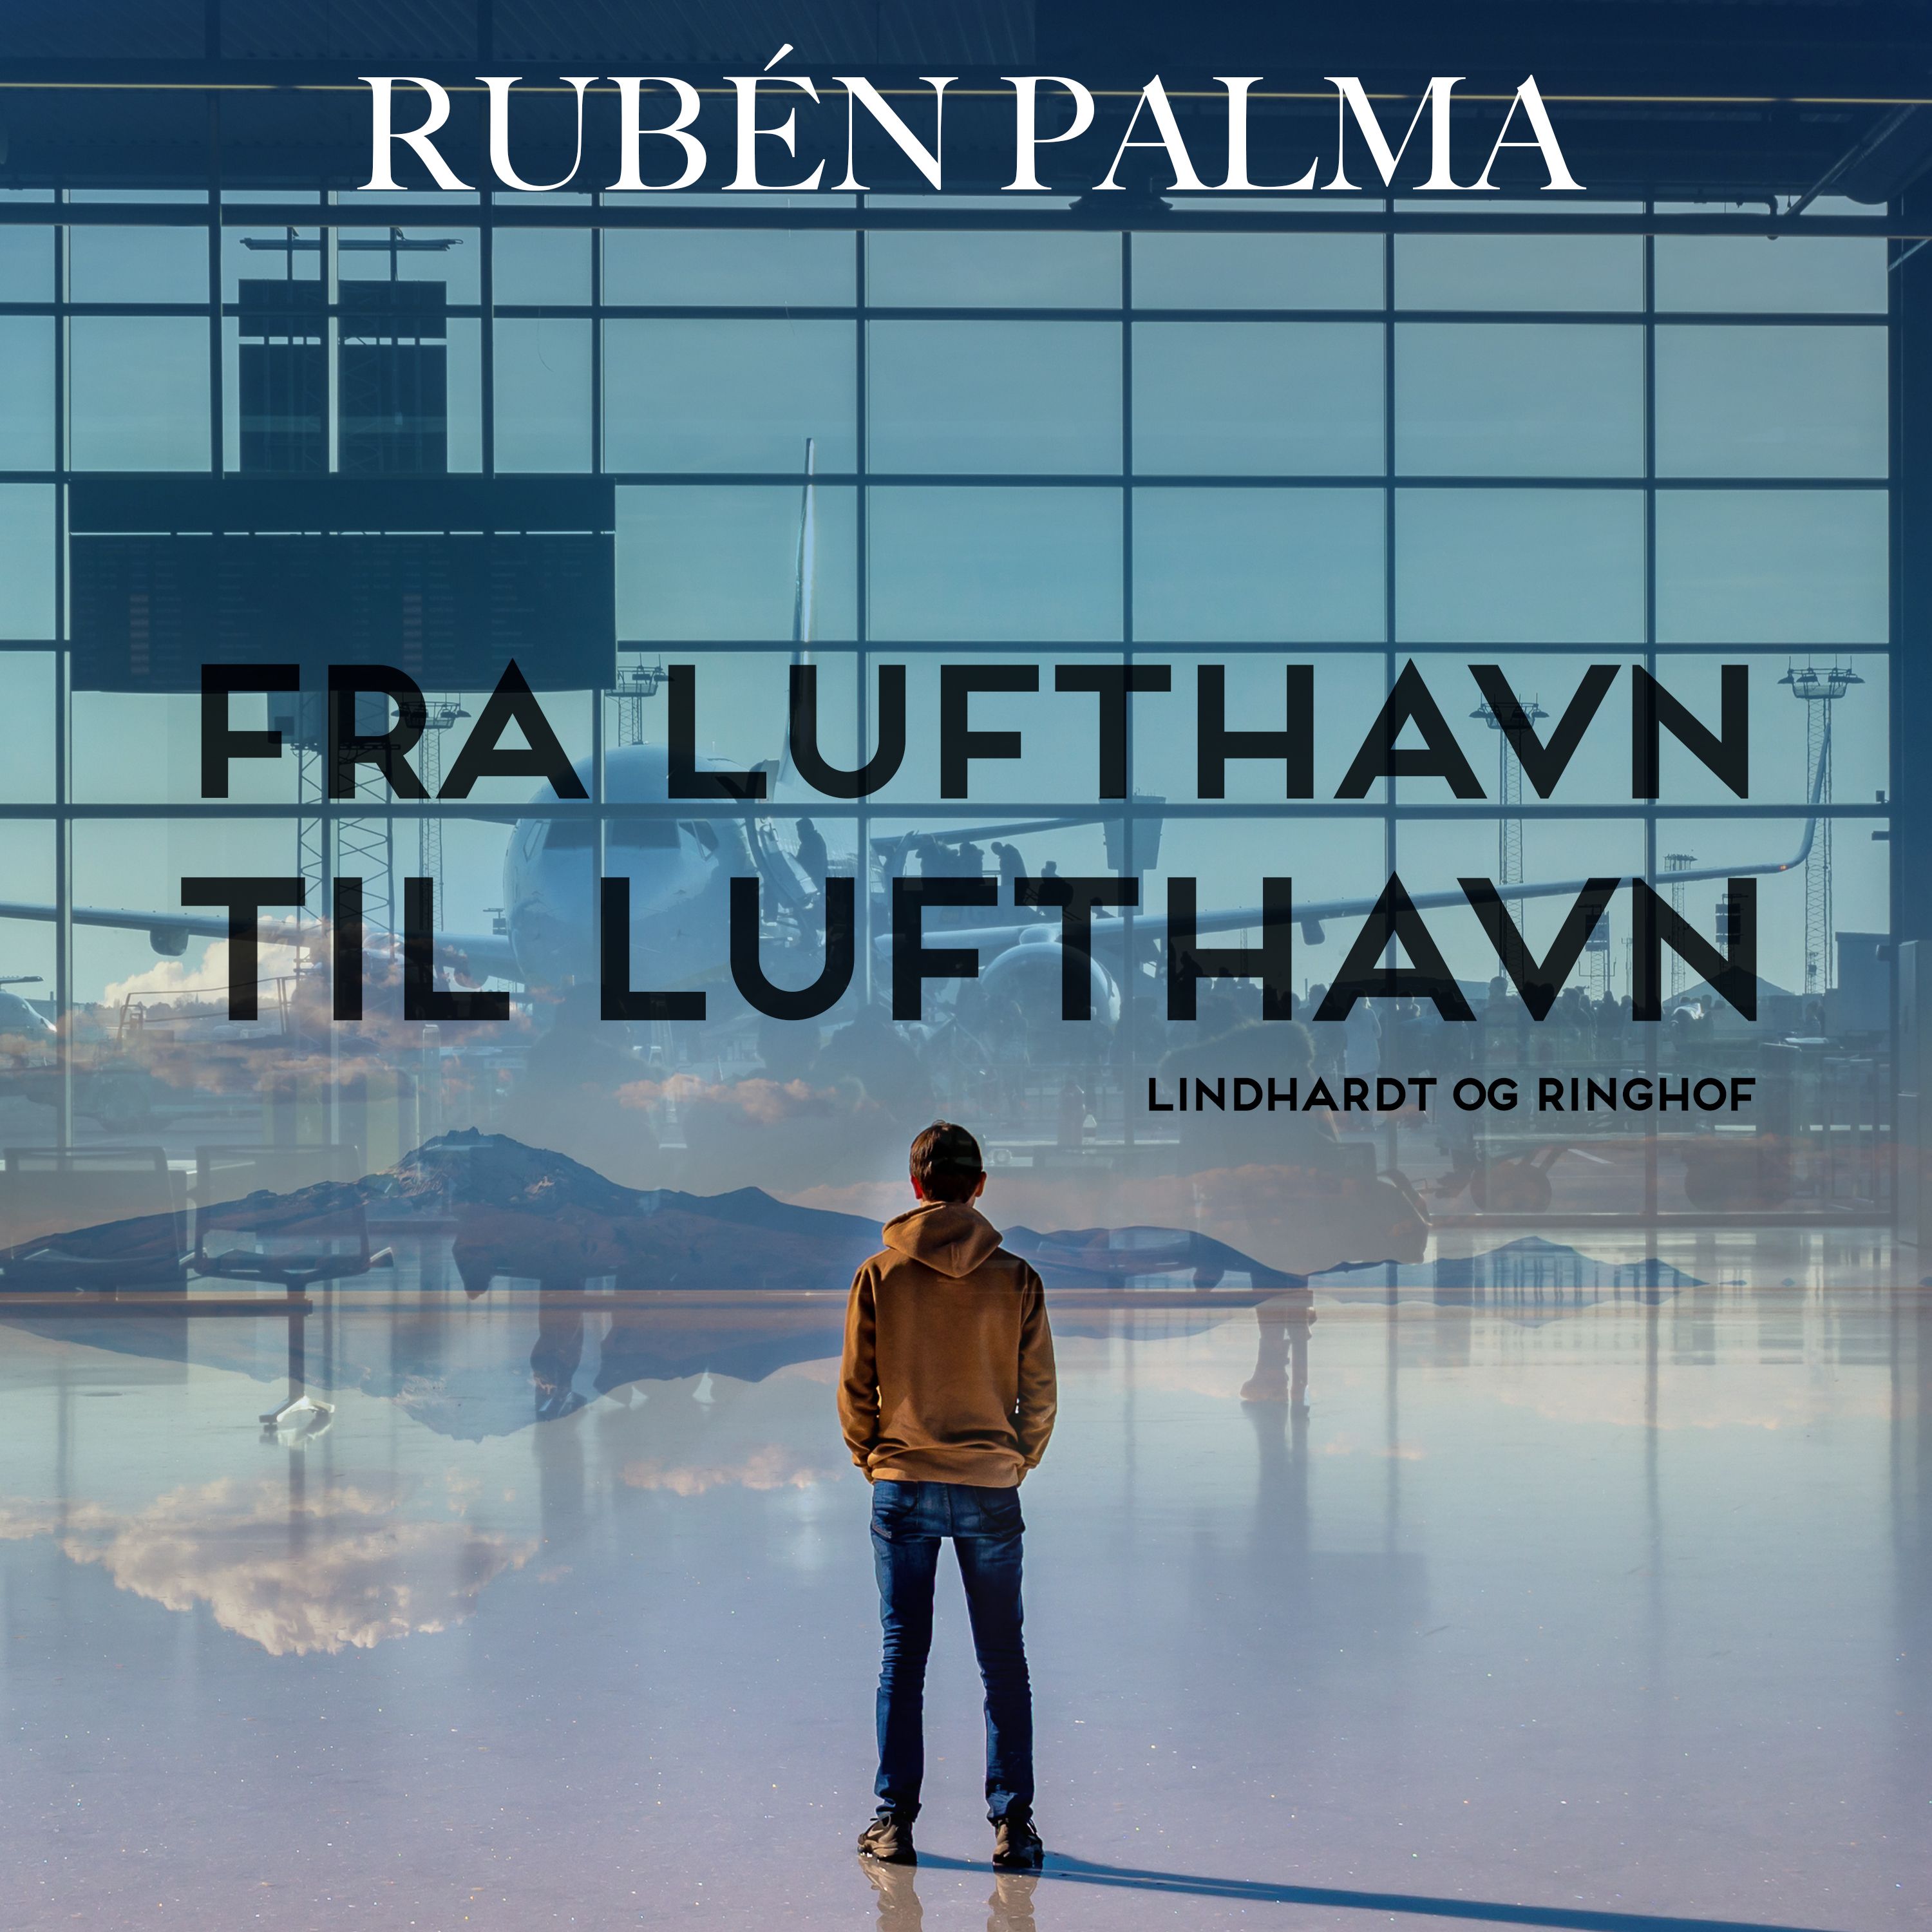 Fra lufthavn til lufthavn, audiobook by Rubén Palma